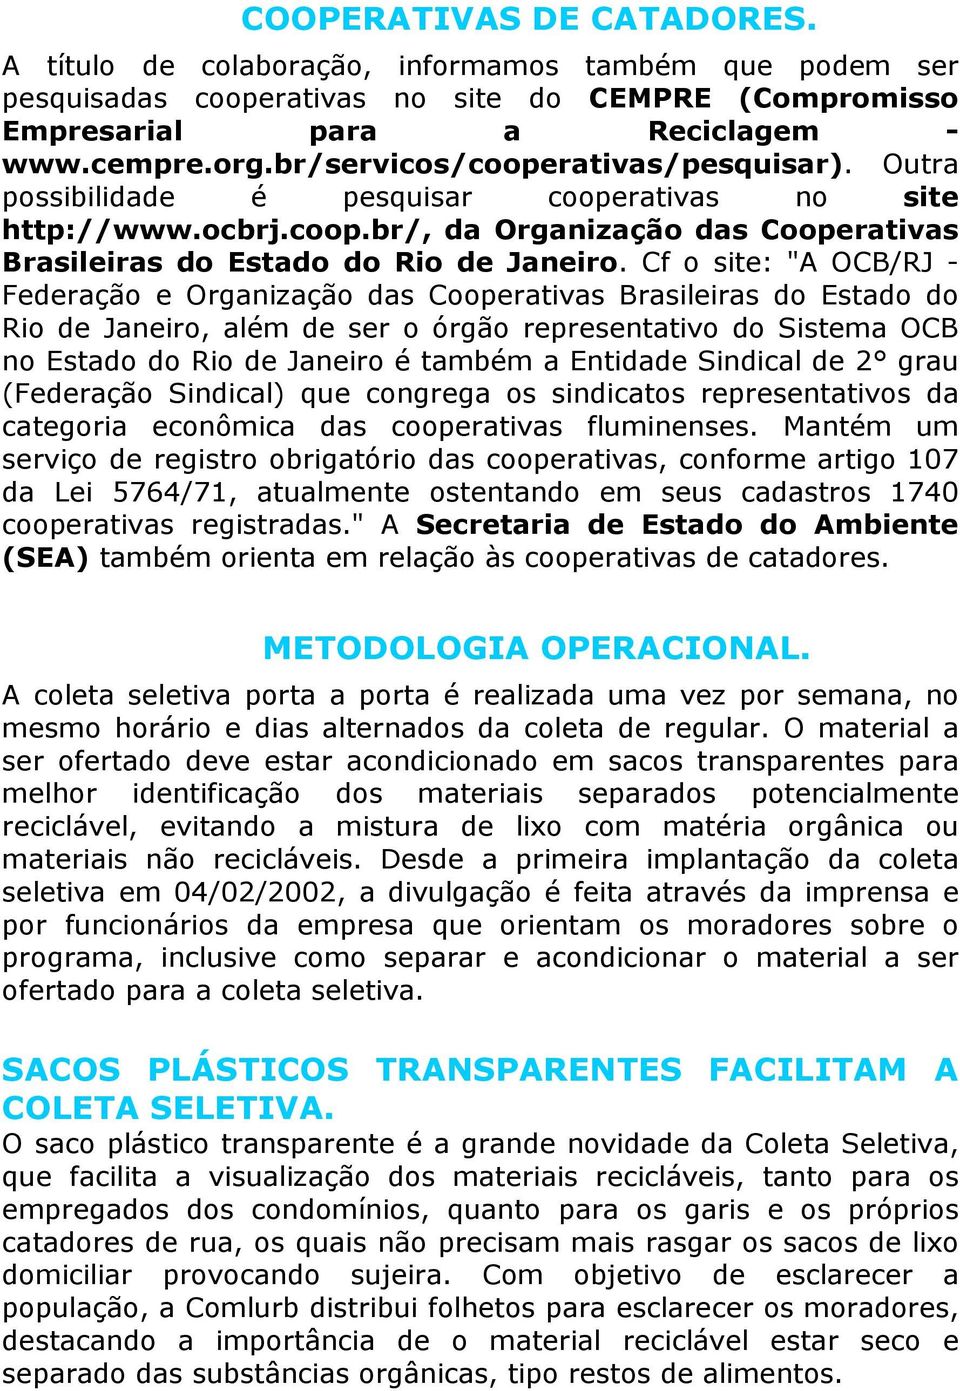 Cf o site: "A OCB/RJ - Federação e Organização das Cooperativas Brasileiras do Estado do Rio de Janeiro, além de ser o órgão representativo do Sistema OCB no Estado do Rio de Janeiro é também a